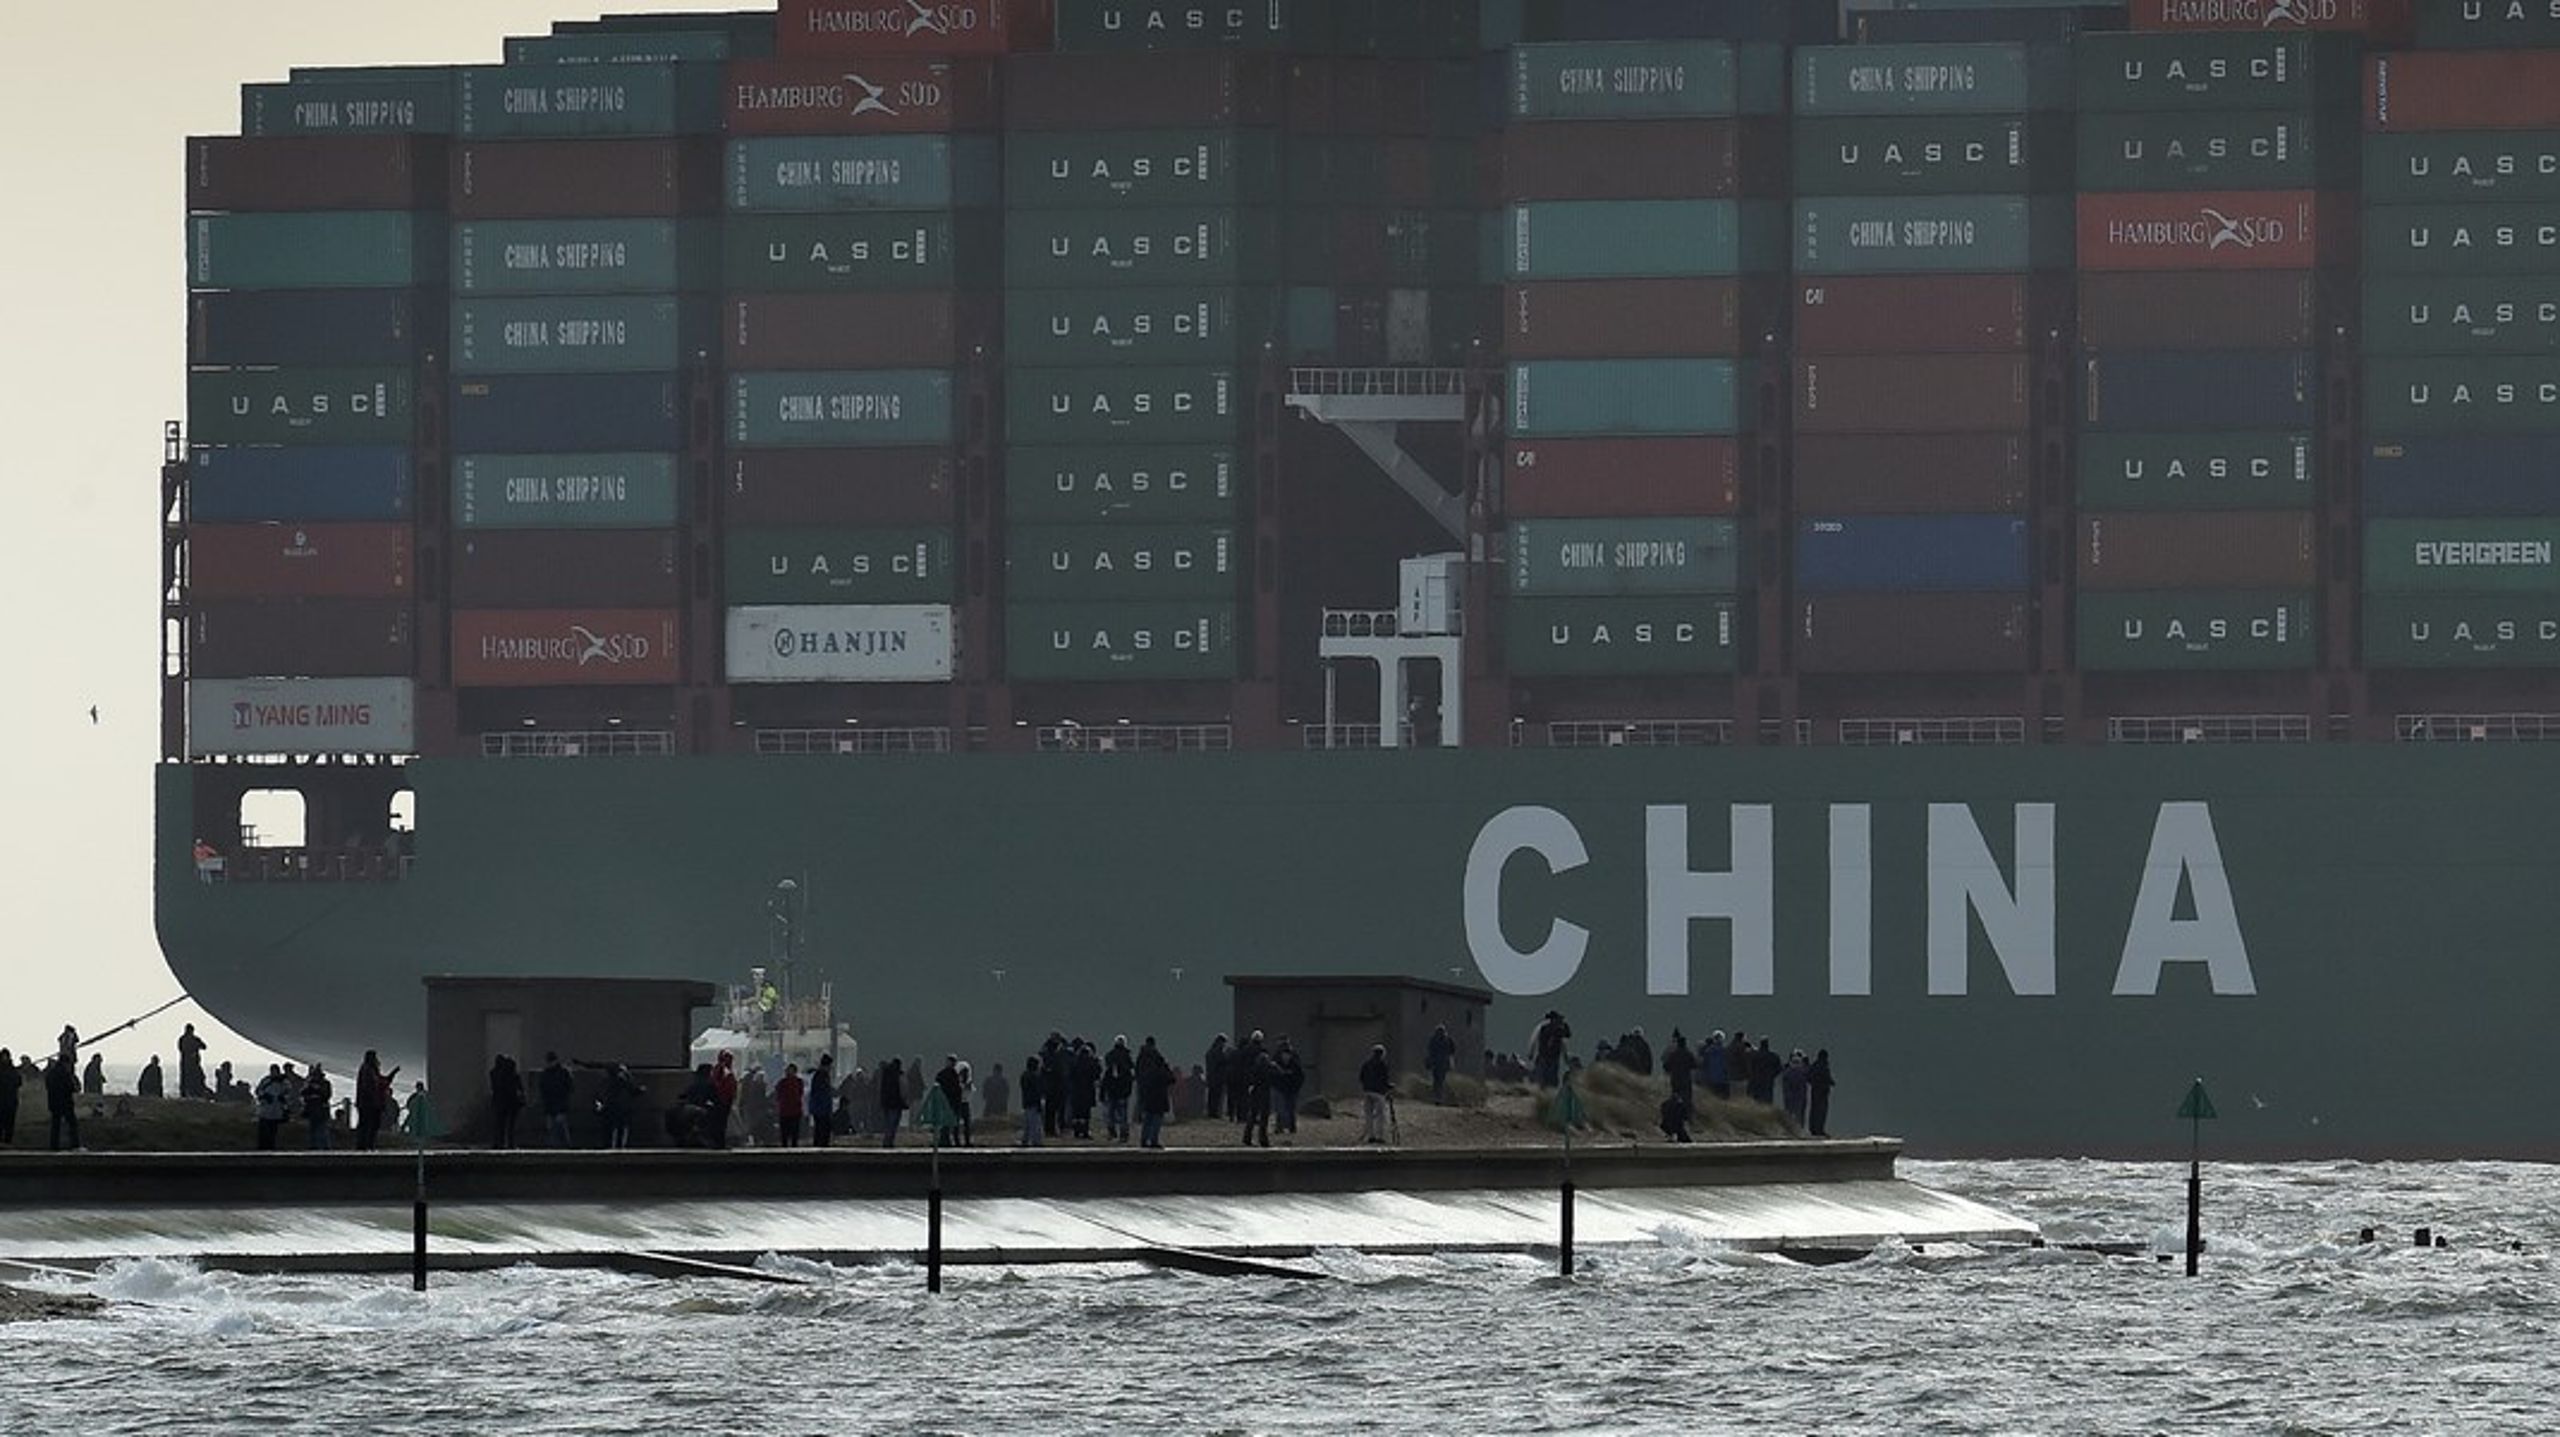 Siden 2001 er den kinesisk ejede handelsflåde ottedoblet og udgør nu 14 procent af den samlede globale handelsflåde. Og halvdelen af den globale handelsflåde bygges ved kinesiske værfter.